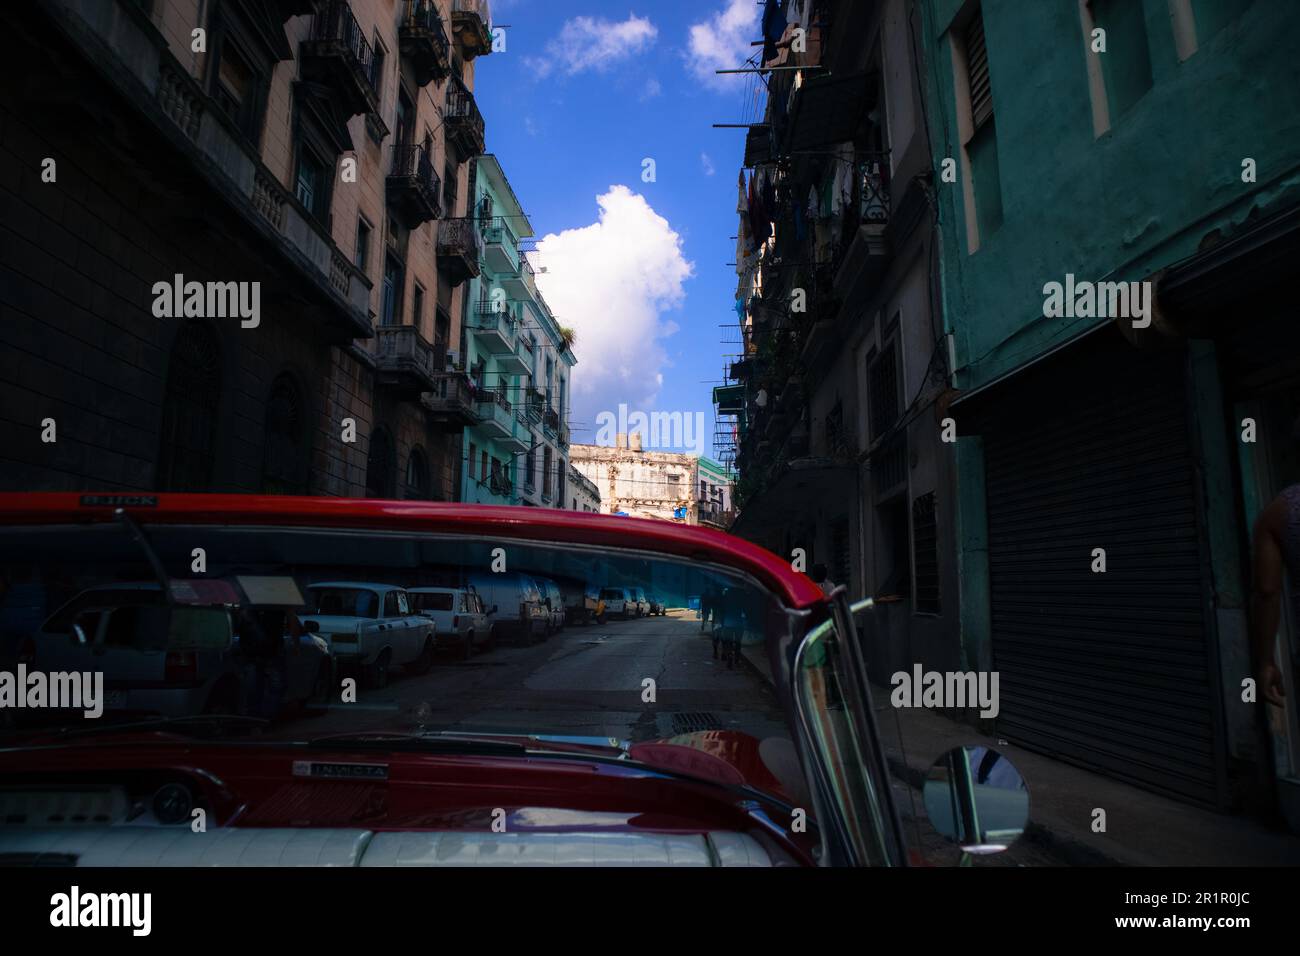 Conduisez une voiture classique à travers la Havane pour un voyage inoubliable dans le charme et l'histoire de la ville. Banque D'Images